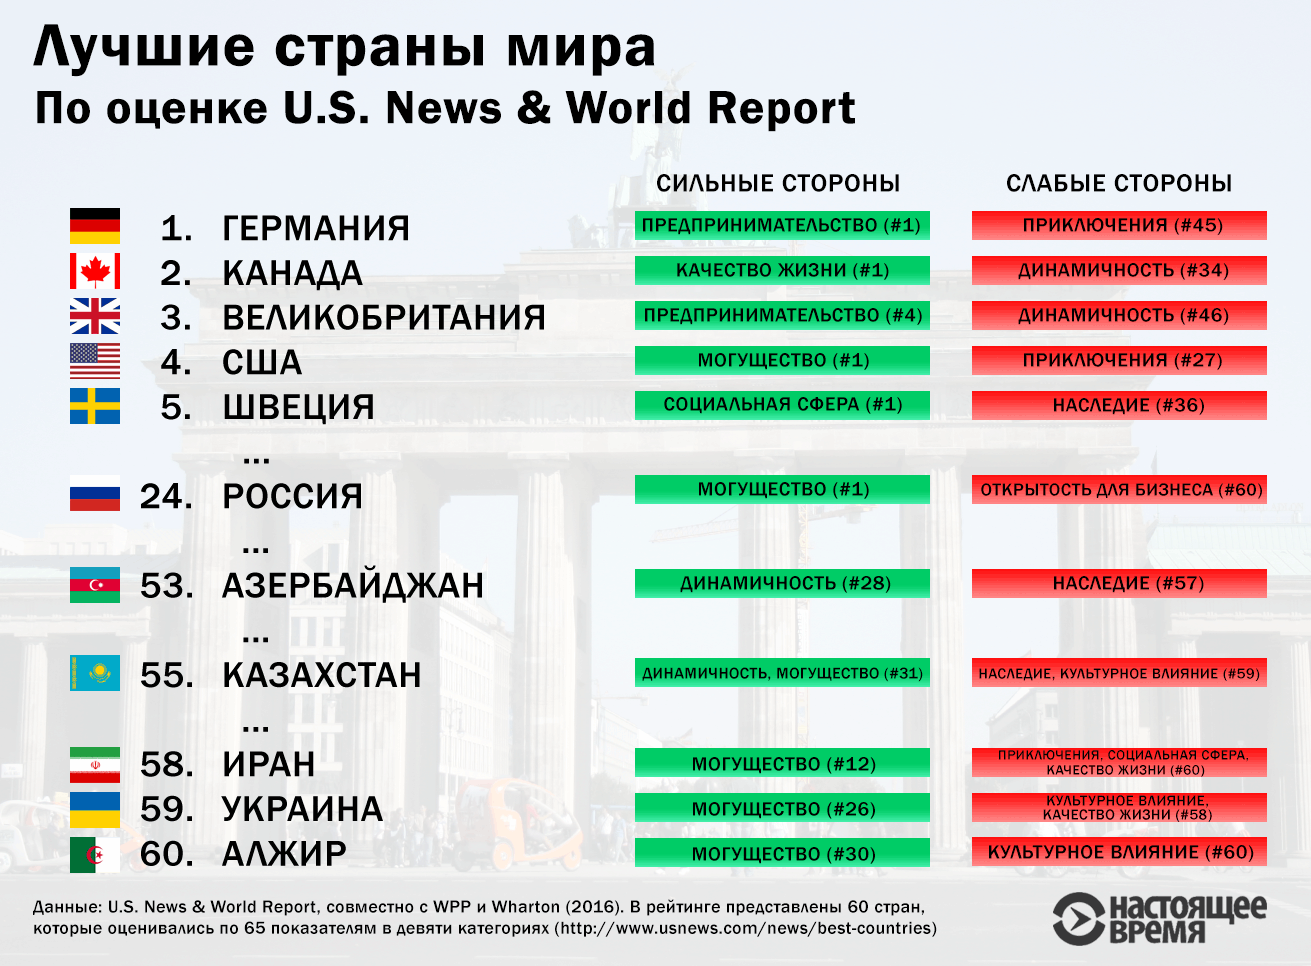 Как уехать из россии: лучшие страны для эмиграции